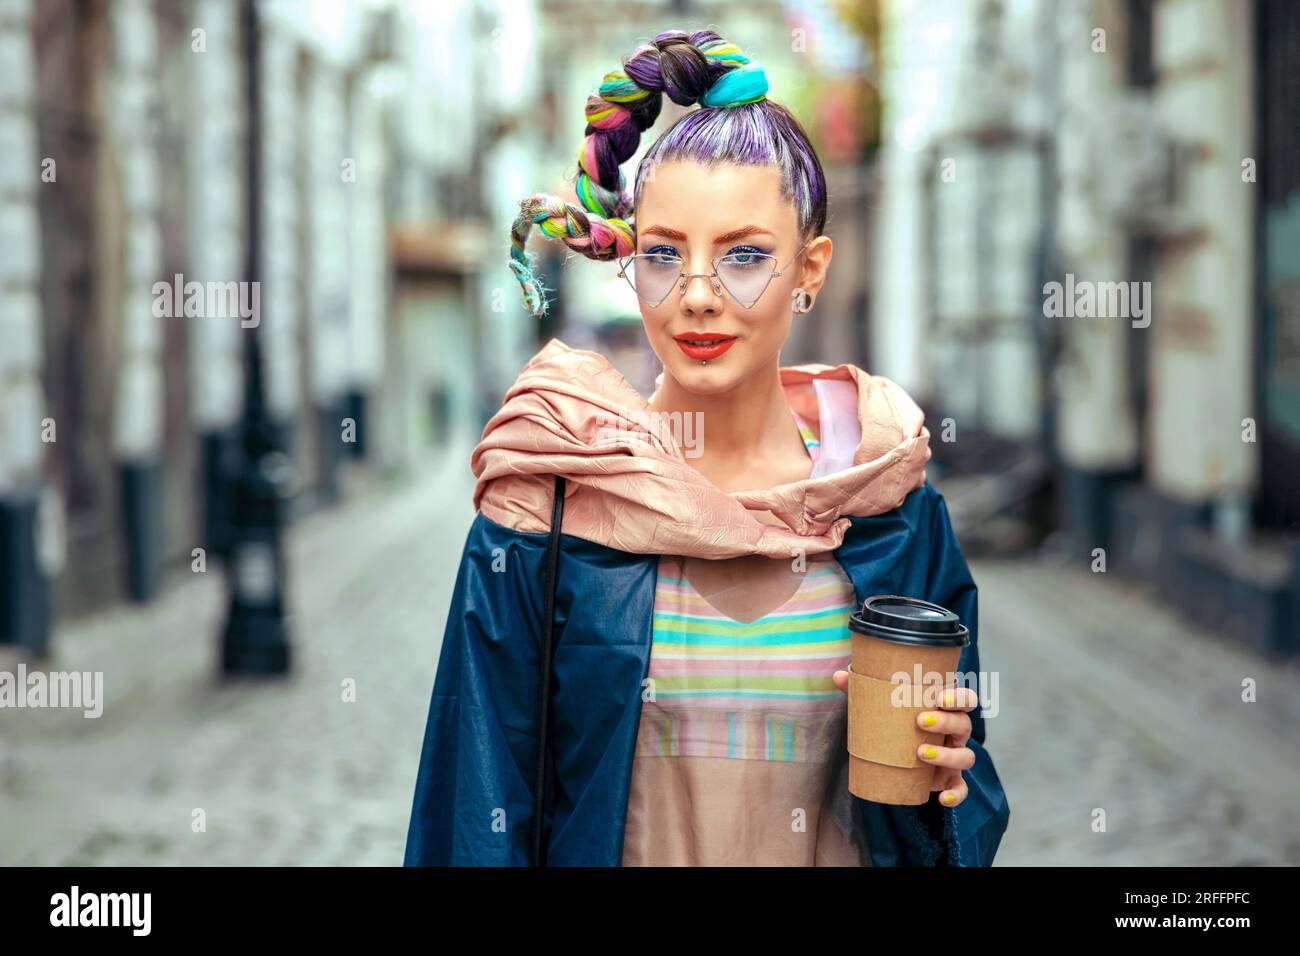 Cooles, flippiges junges Mädchen mit Piercings und verrücktem Haar genießt Kaffee zum Mitnehmen auf der Straße – Hipster Woman mit trendy bunten Avantgarde-Look, die Spaß hat Stockfoto